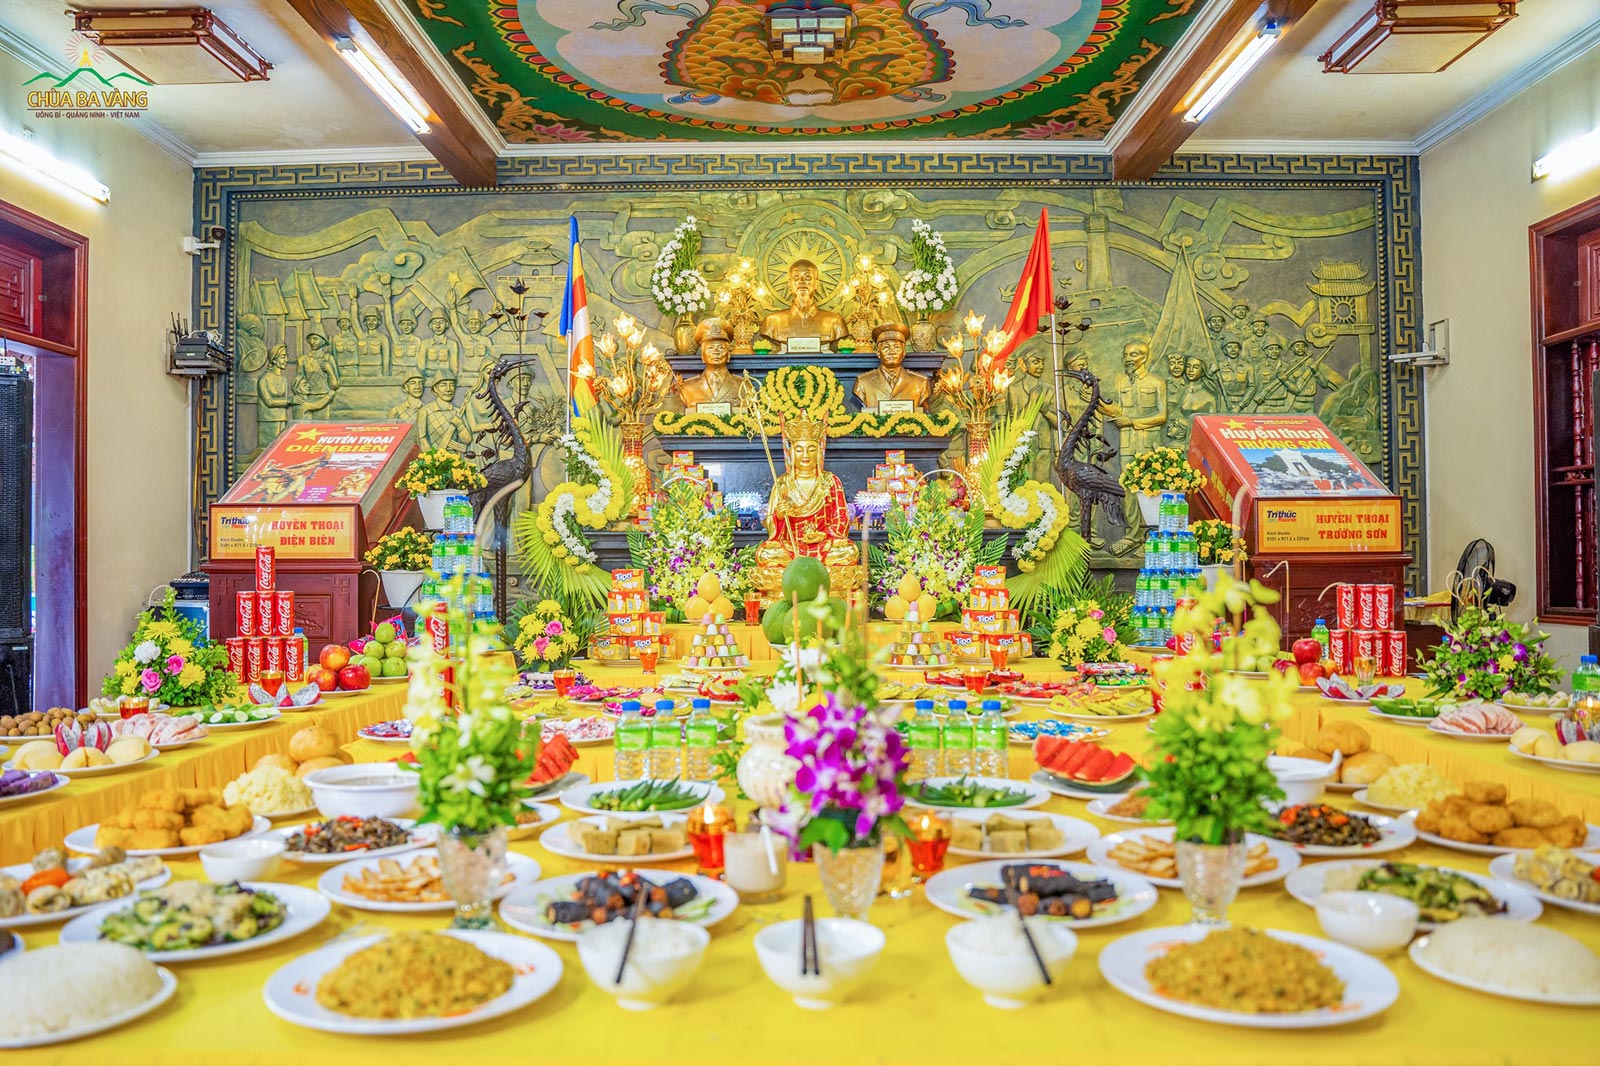 Với tâm tưởng nhớ, tri ân các Anh hùng Liệt sĩ, các Phật tử chùa Ba Vàng đã chuẩn bị đàn cúng thí với những vật thực và hương hoa tinh sạch